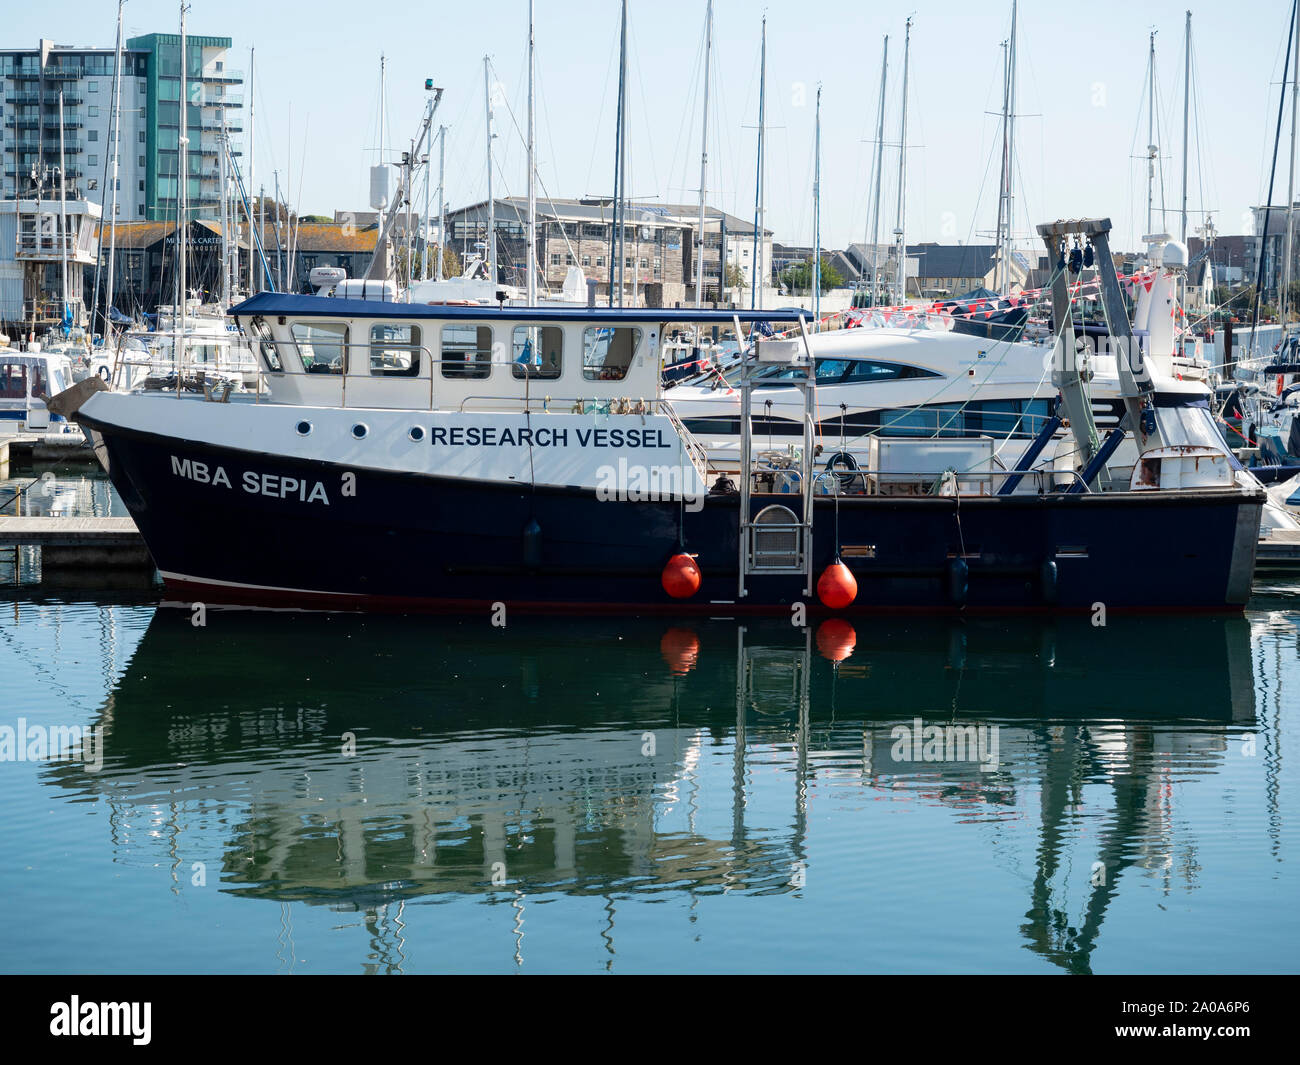 Asociación de Biología Marina del buque de investigación 'Sepia' en Sutton Harbour, Plymouth, Reino Unido Foto de stock